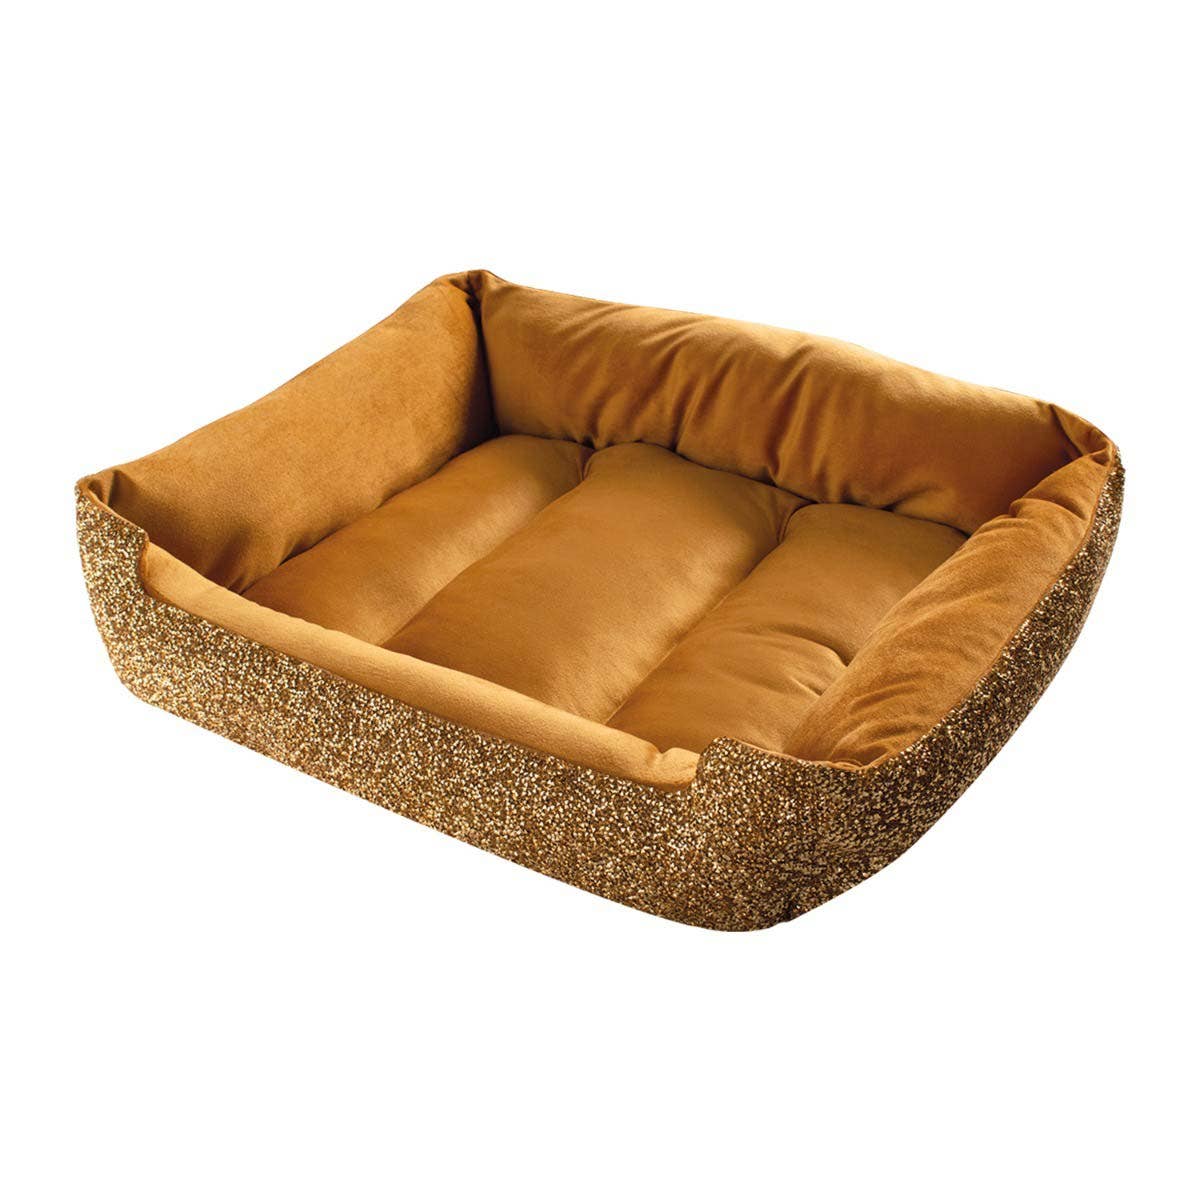 Rhinestone Dog Bed: Large / Charcoal